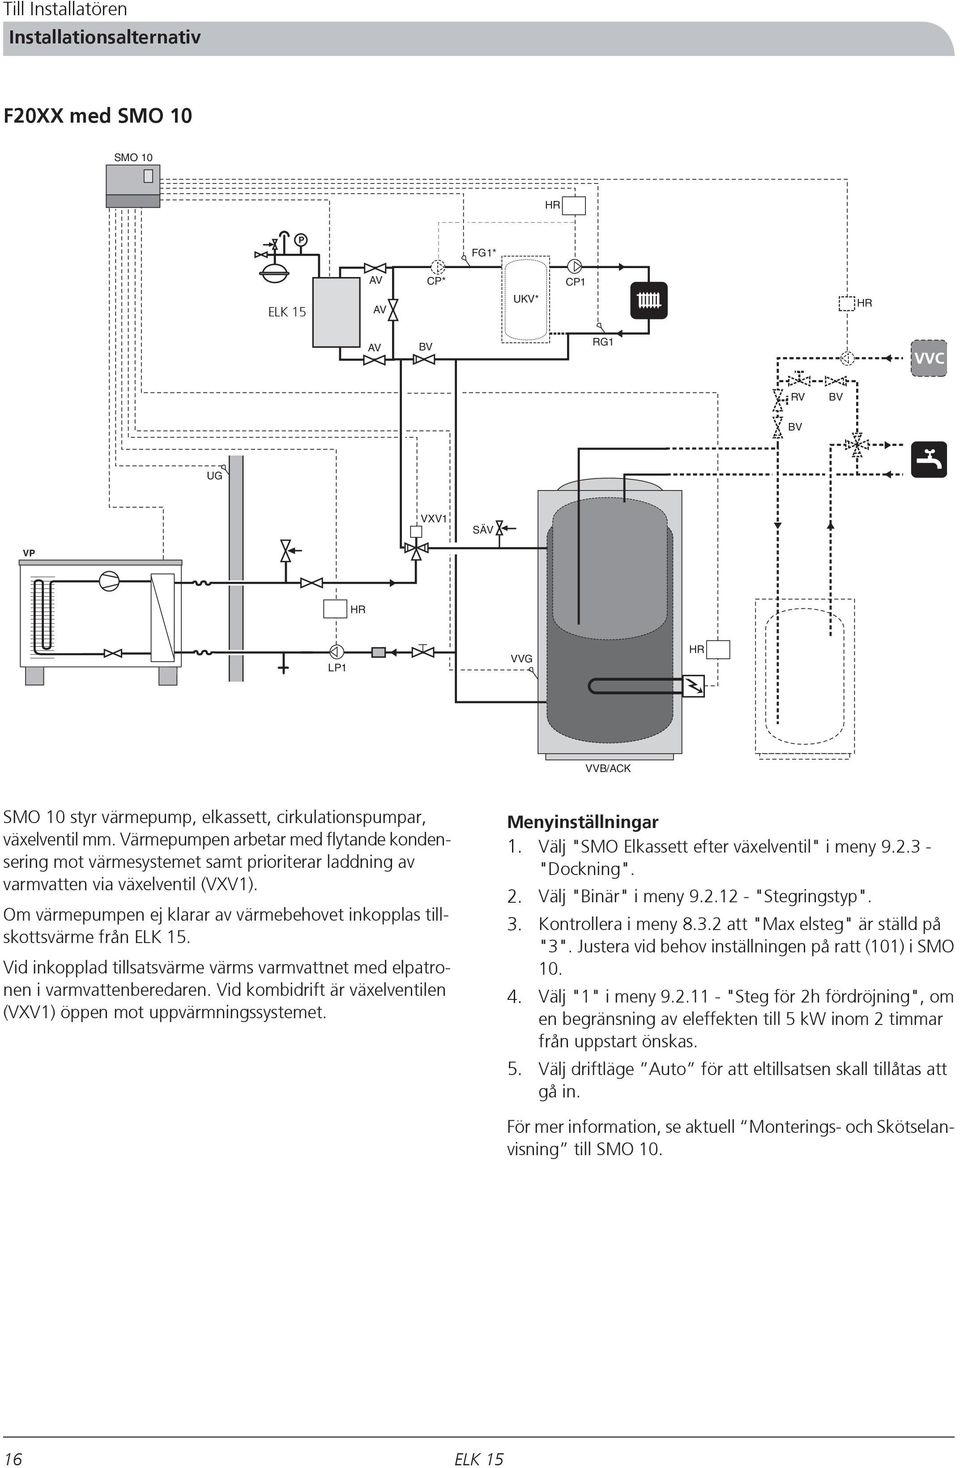 Vid inkopplad tillsatsvärme värms varmvattnet med elpatronen i varmvattenberedaren. Vid kombidrift är växelventilen (VXV1) öppen mot uppvärmningssystemet. Menyinställningar 1.